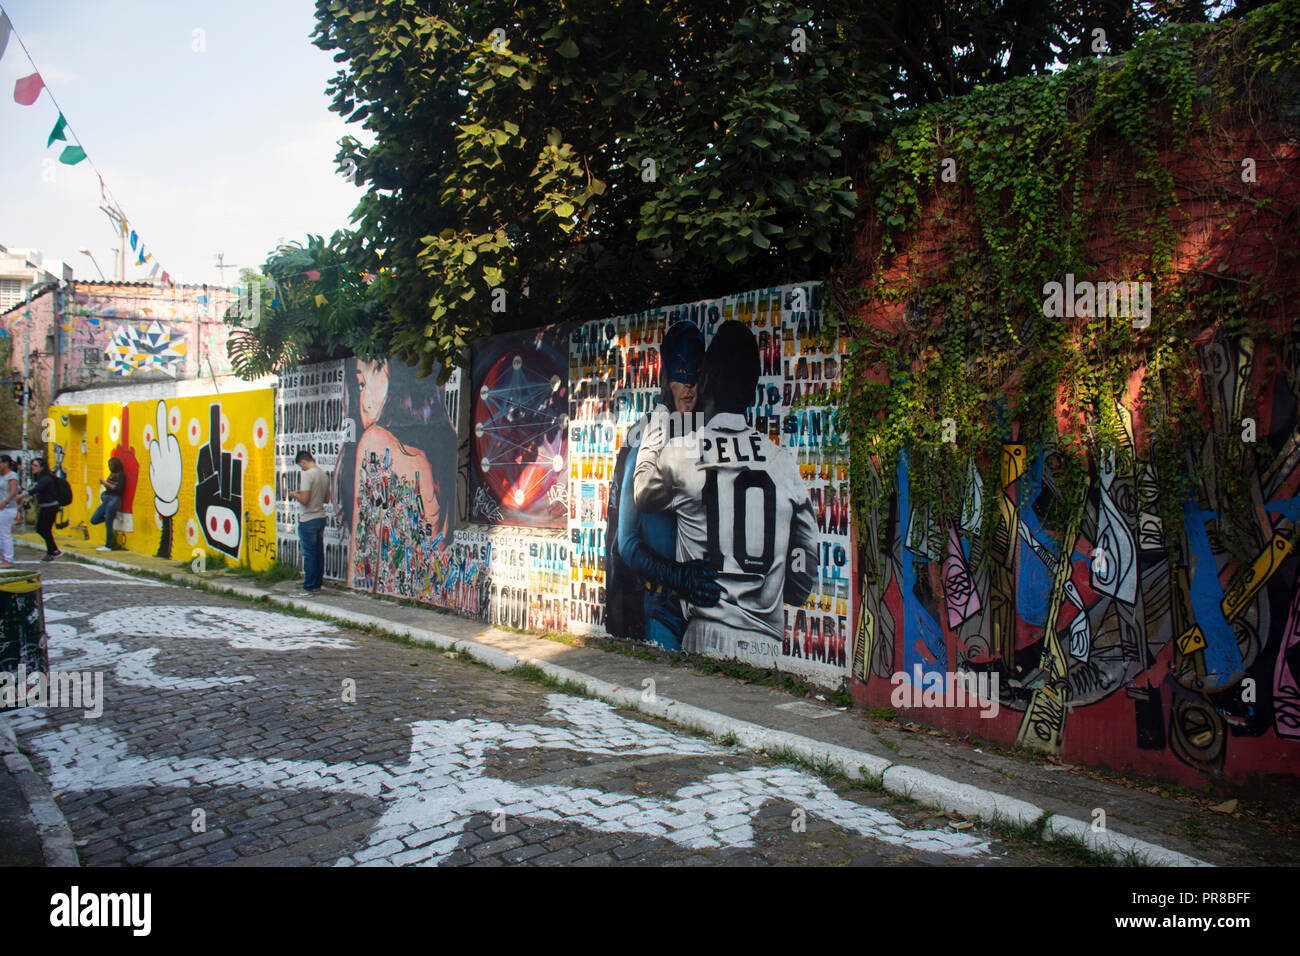 Street art 'Pele' beijoqueiro par artiste Bueno Caos dans une ruelle à Beco do Batman, célèbre quartier bohème Vila Madalena, Sao Paulo, Brésil Banque D'Images